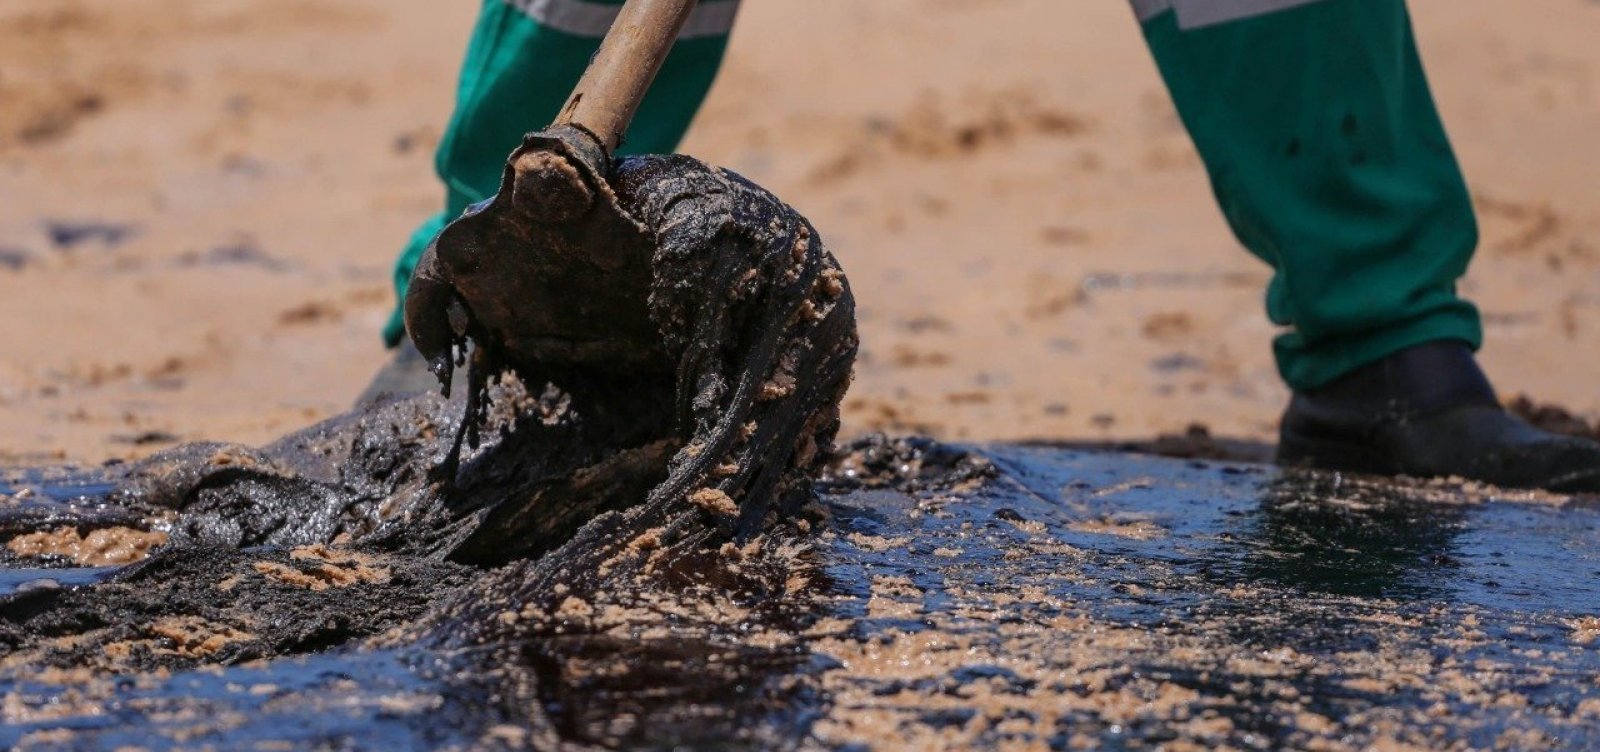 Novas manchas de óleo são vistas em Candeias: "Origem desconhecida", diz especialista